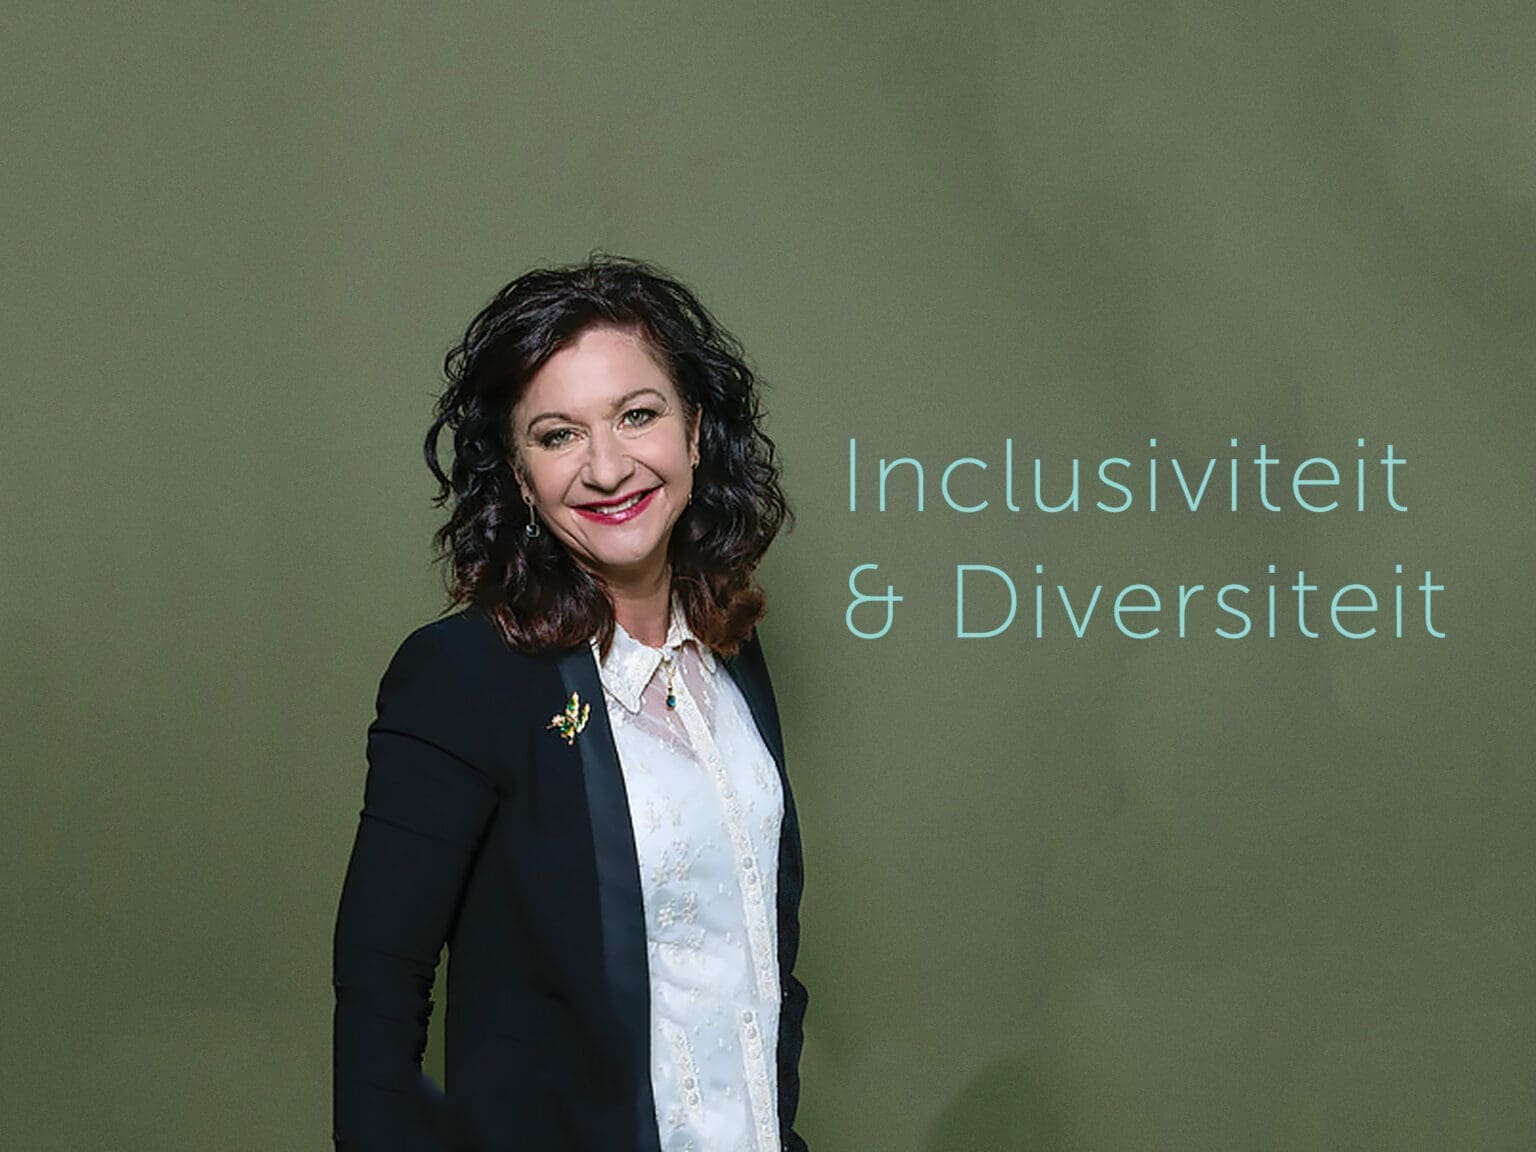 Danelle-Braun-over-inclusiviteit-en-diversiteit-op-sterk-door-werk-congres-2021